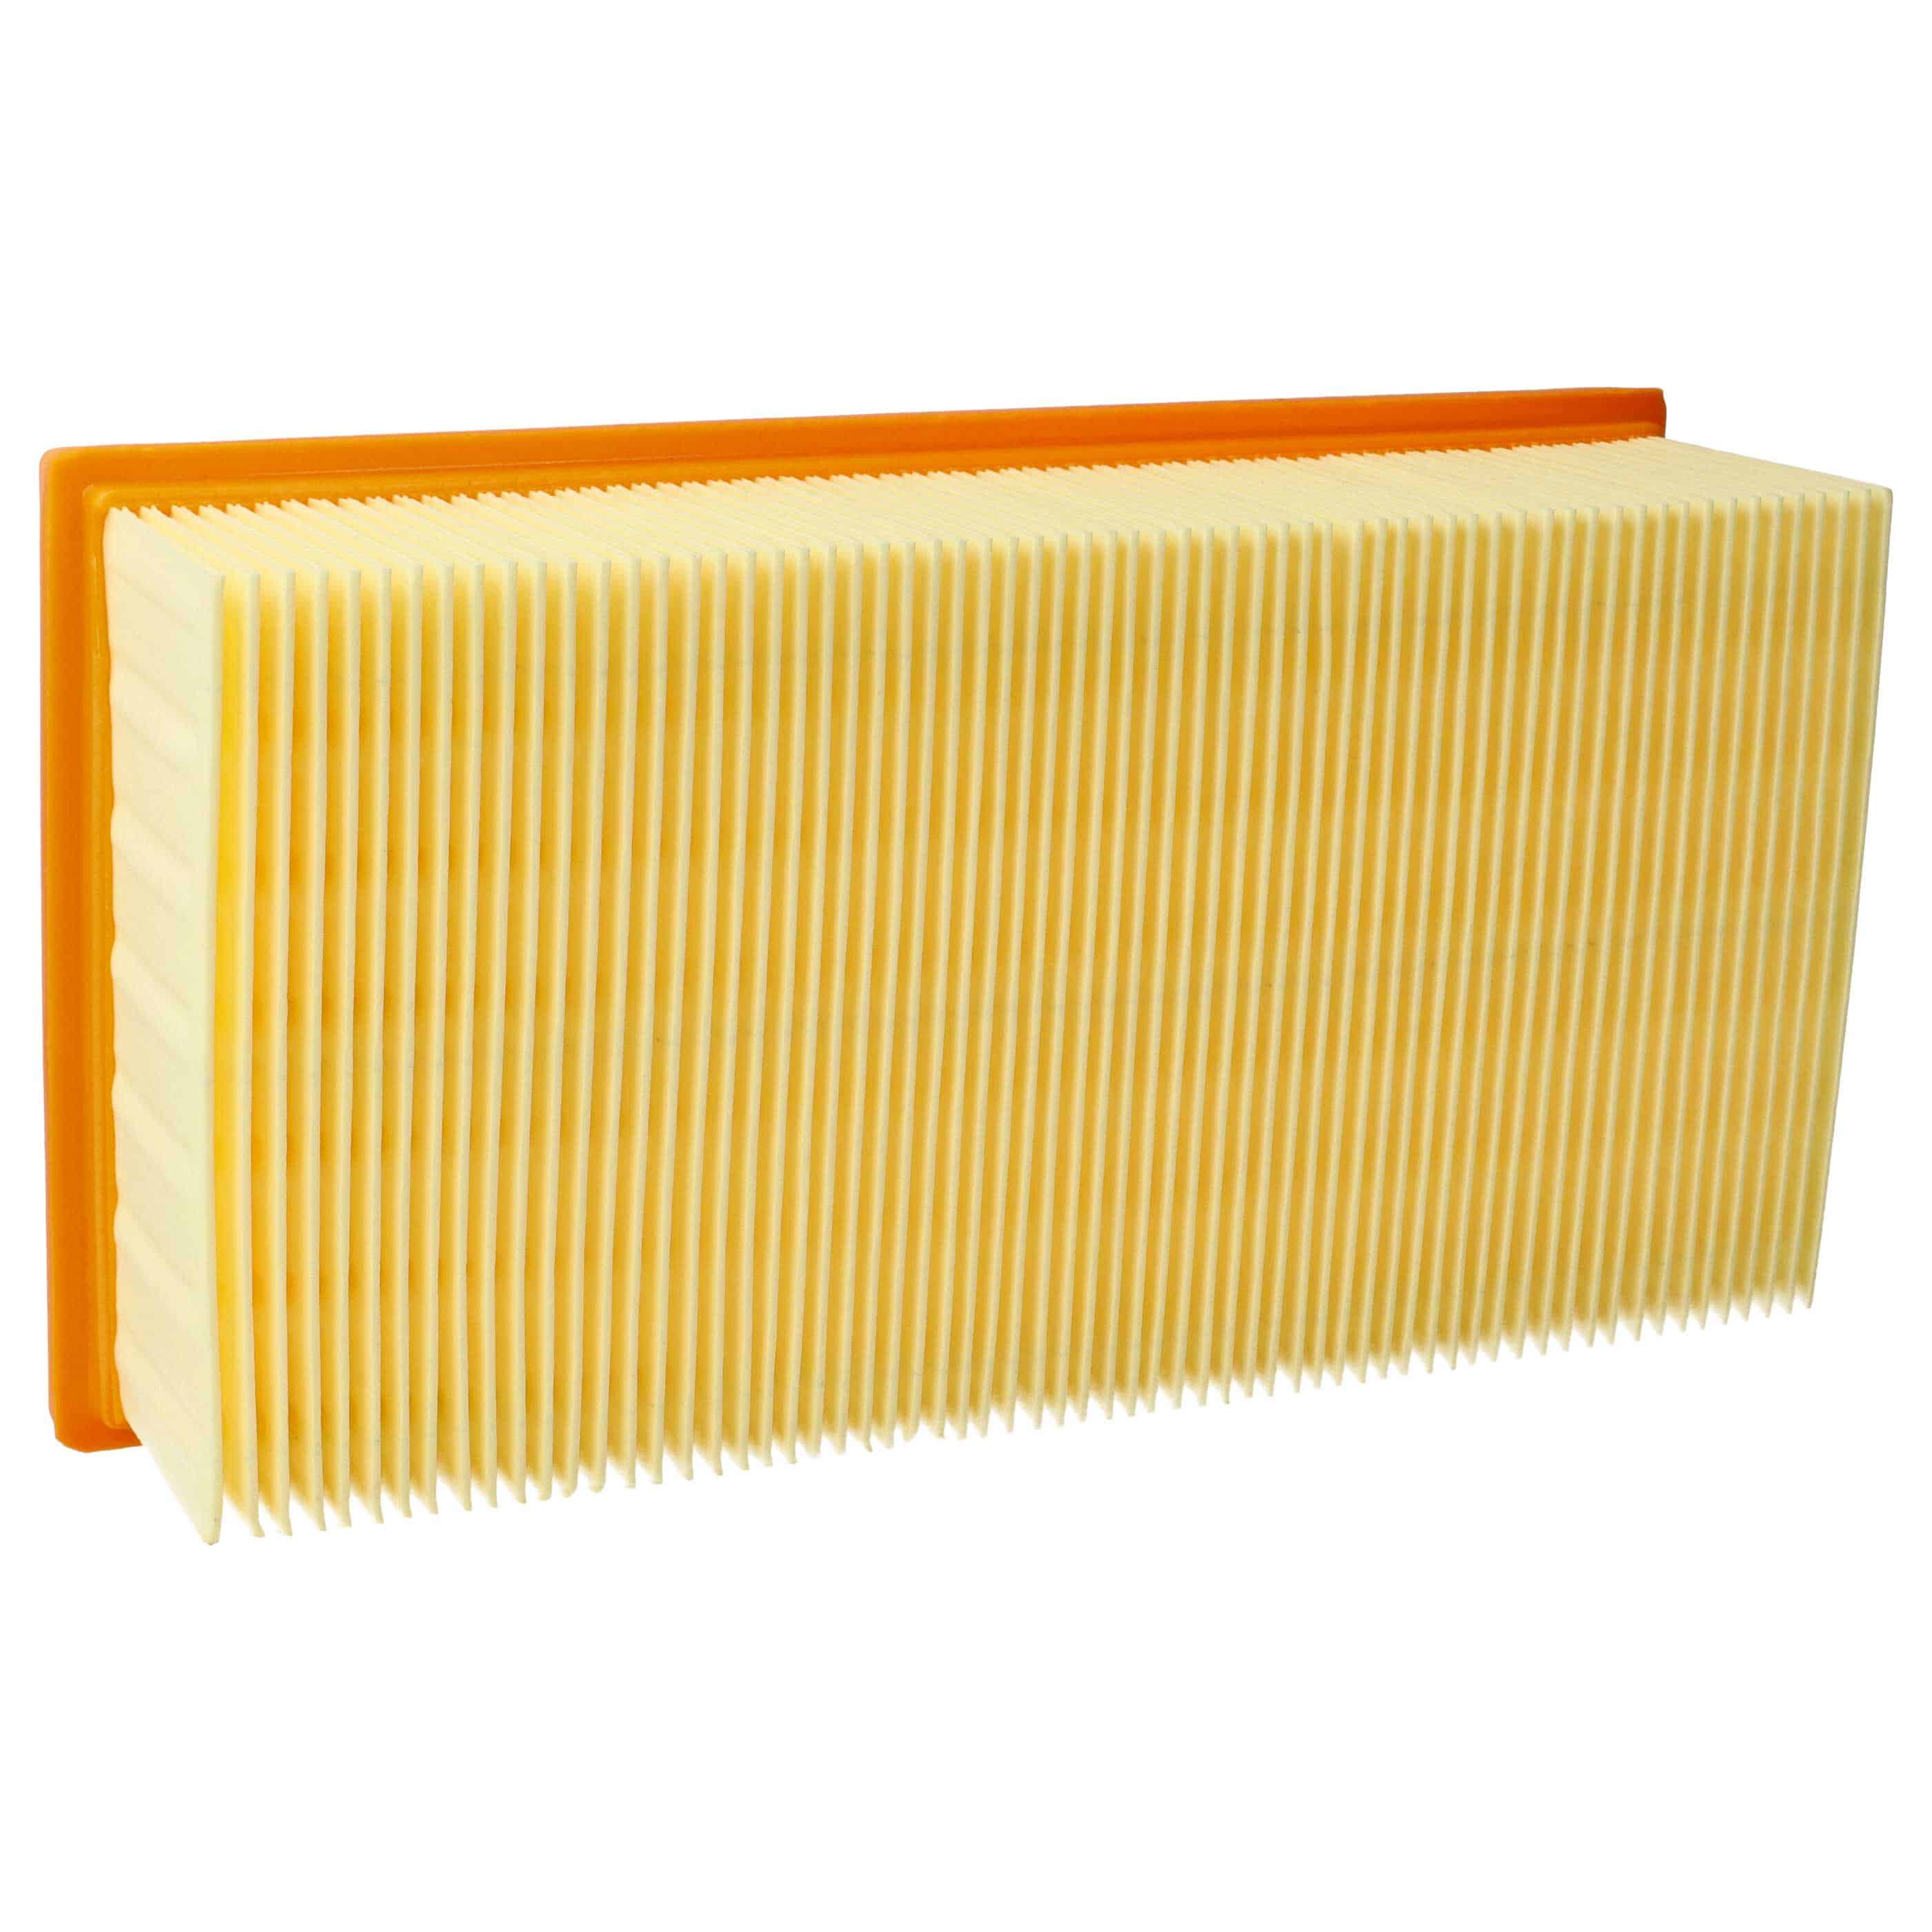 1x flat pleated filter replaces Festool 452923, 500558 for Kränzle Vacuum Cleaner